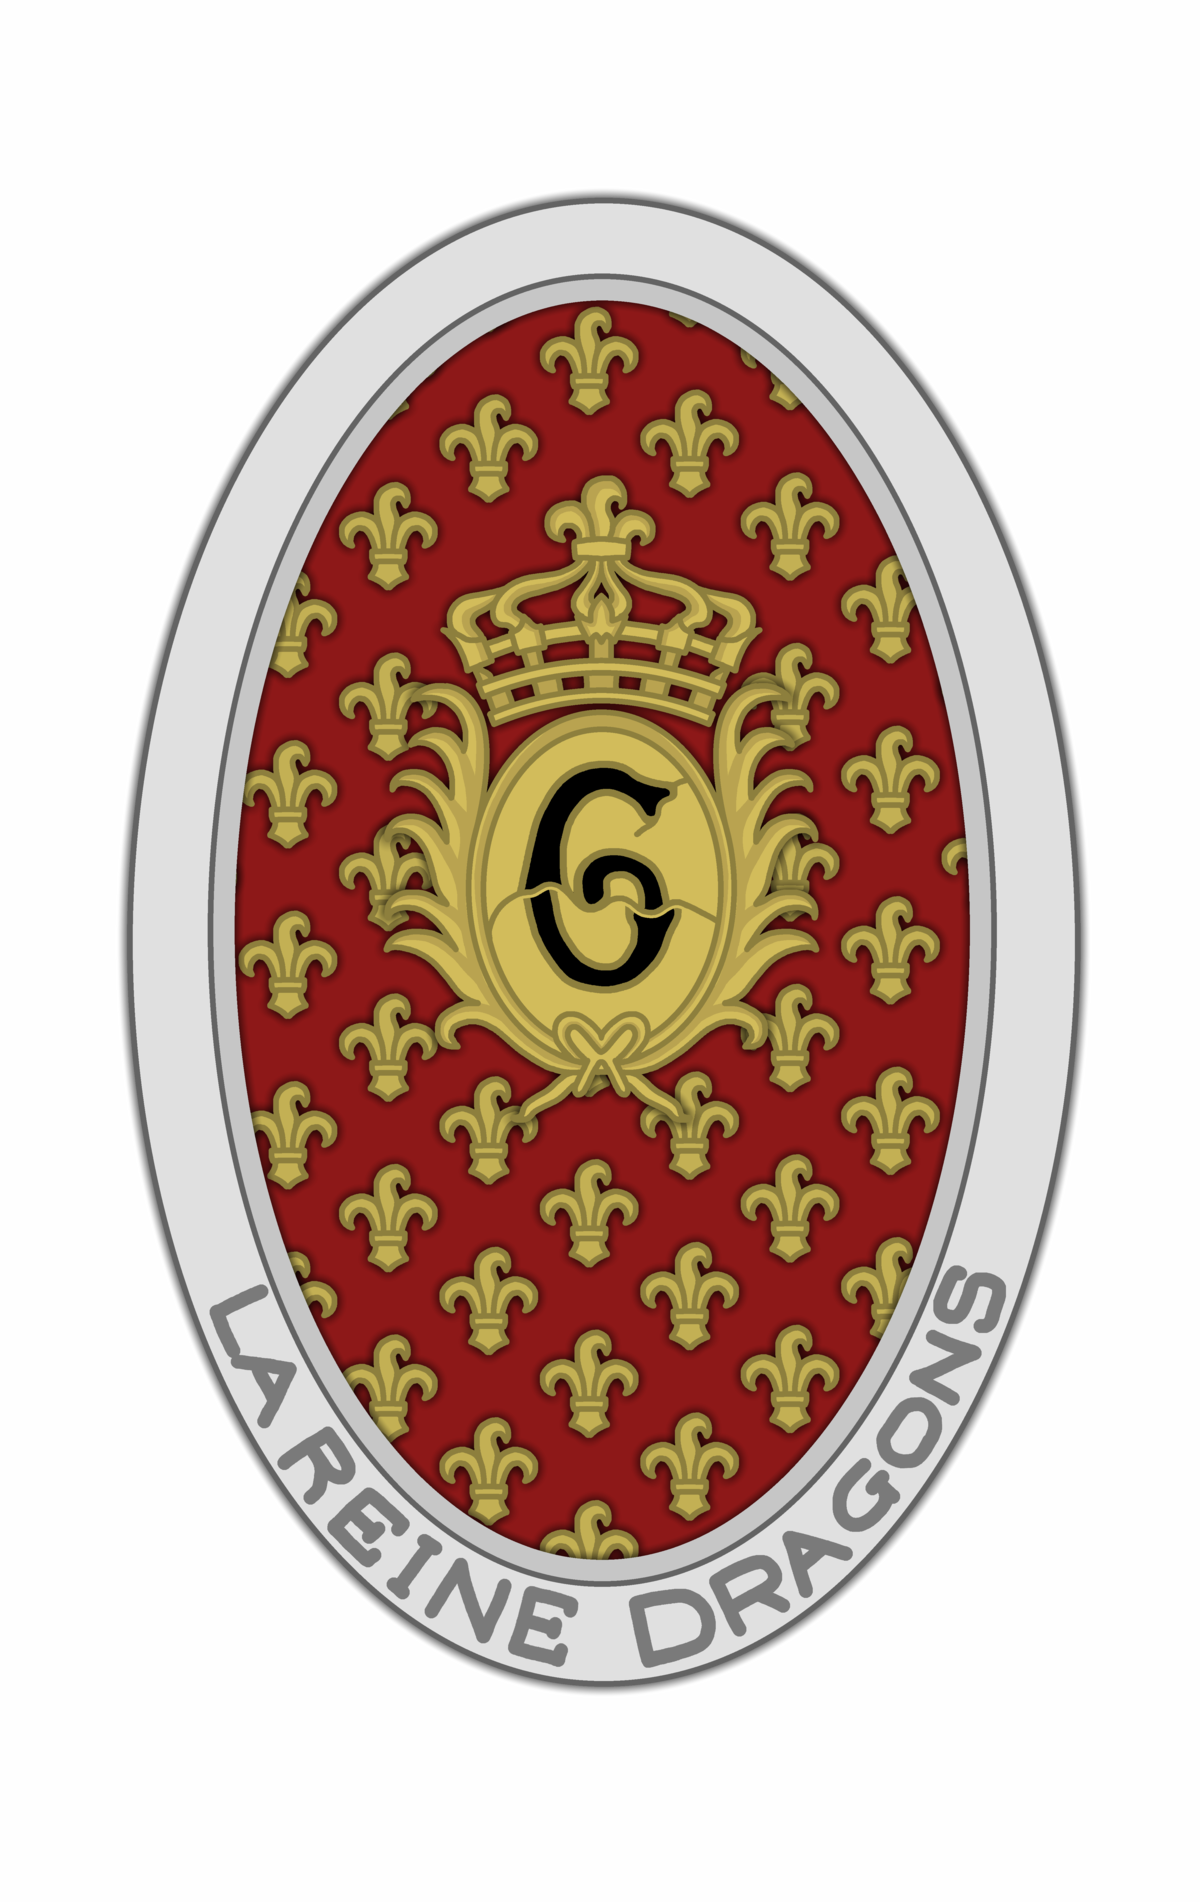 6e régiment de dragons (France) — Wikipédia